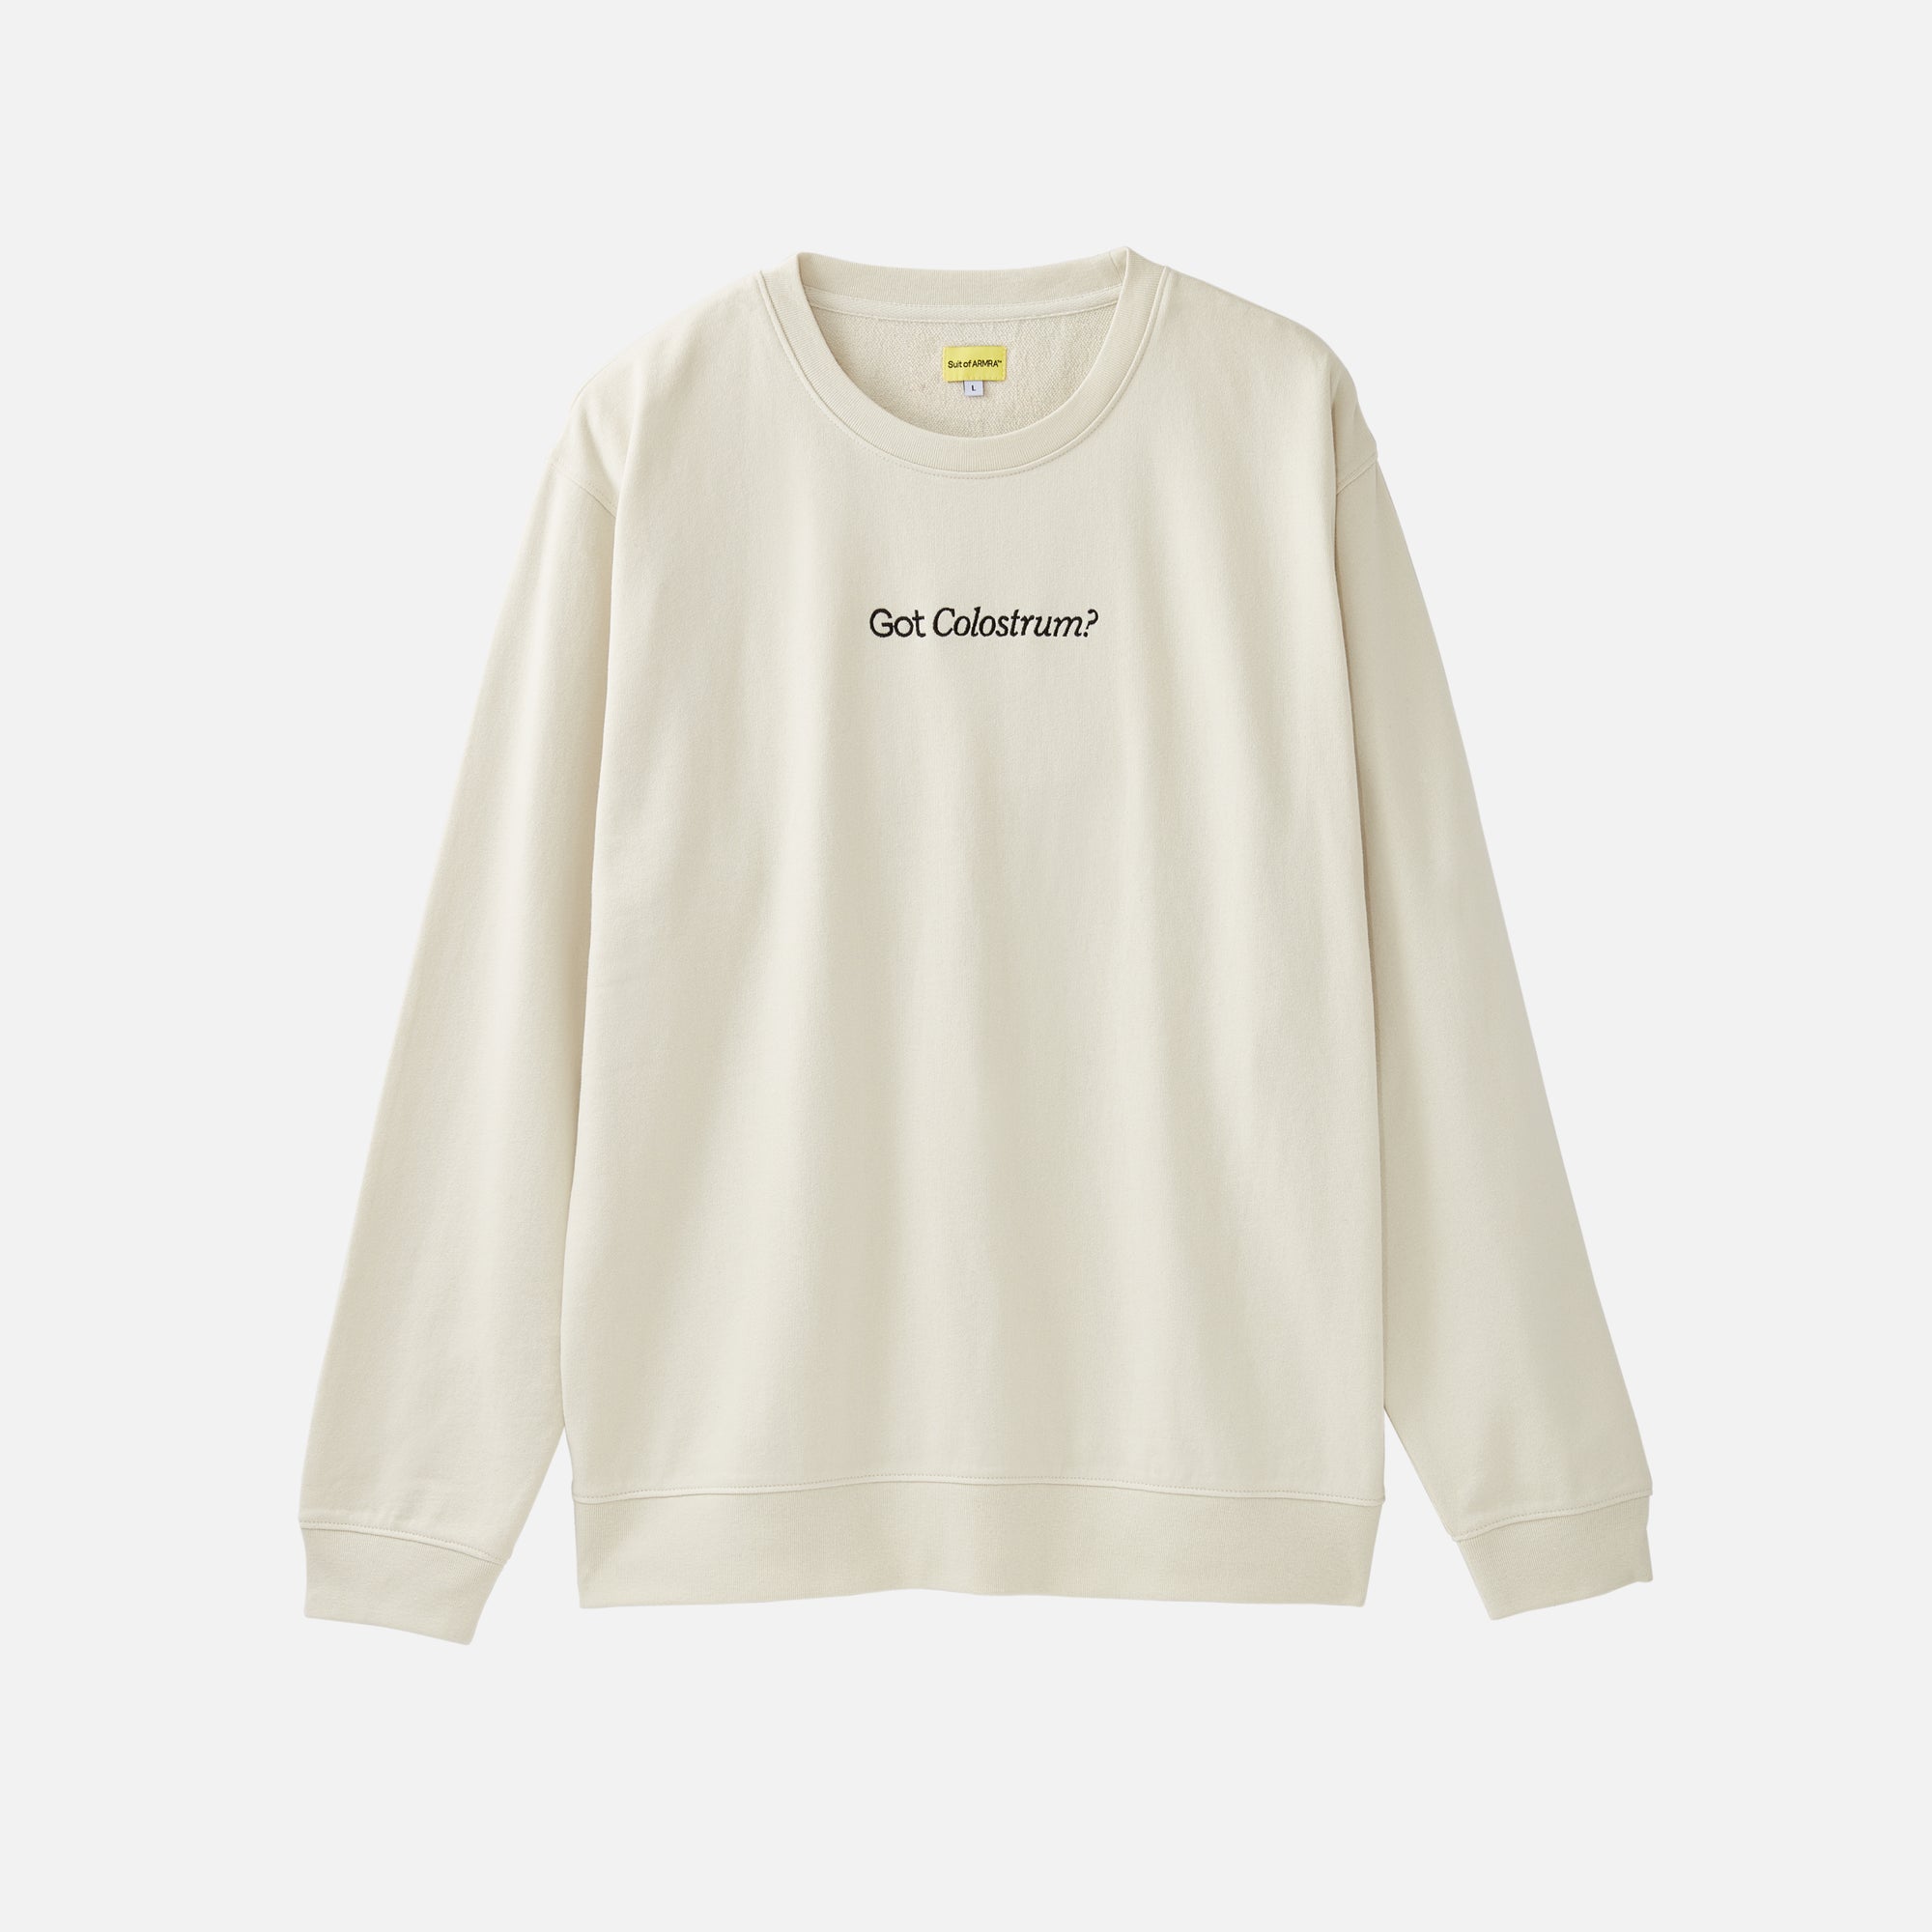 Cream Sweatshirt with "Got Colostrum?" embroidered text